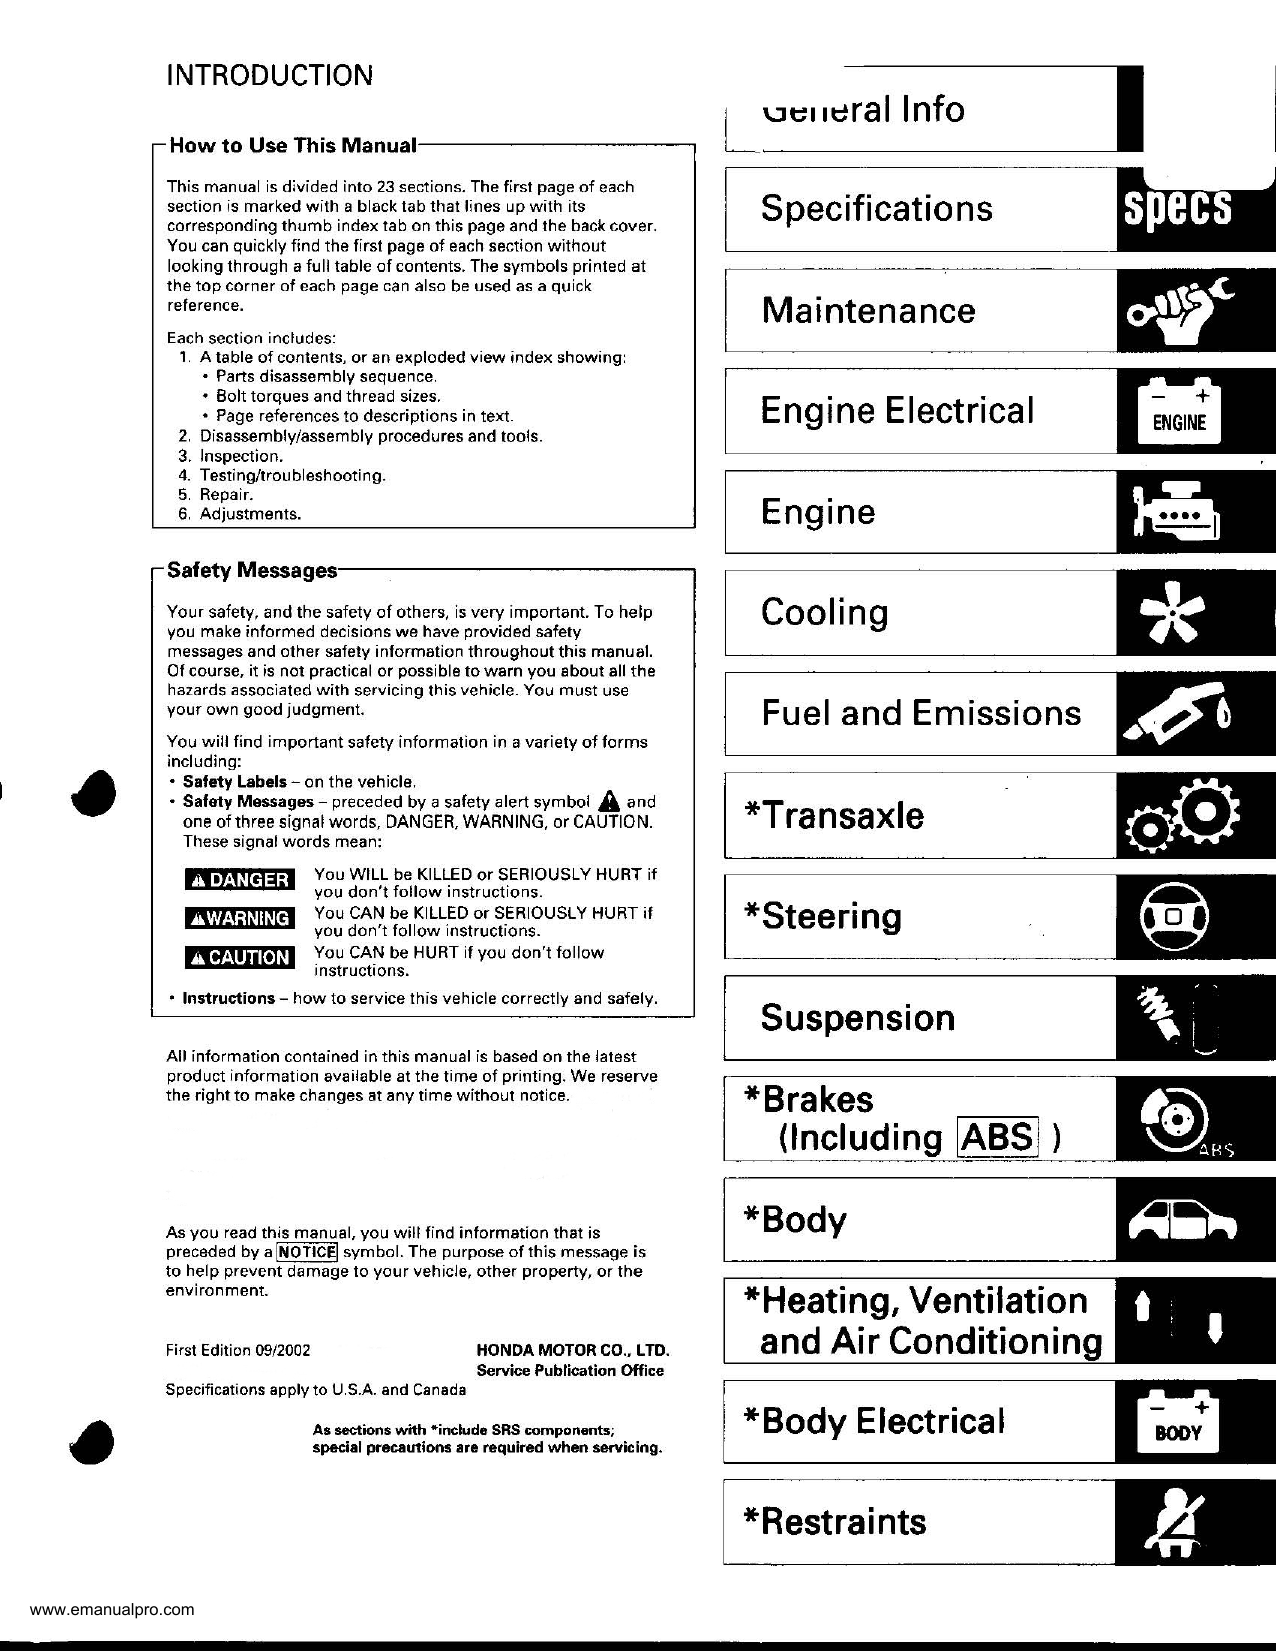 2000-2003 Honda S2000 repair manual Preview image 2